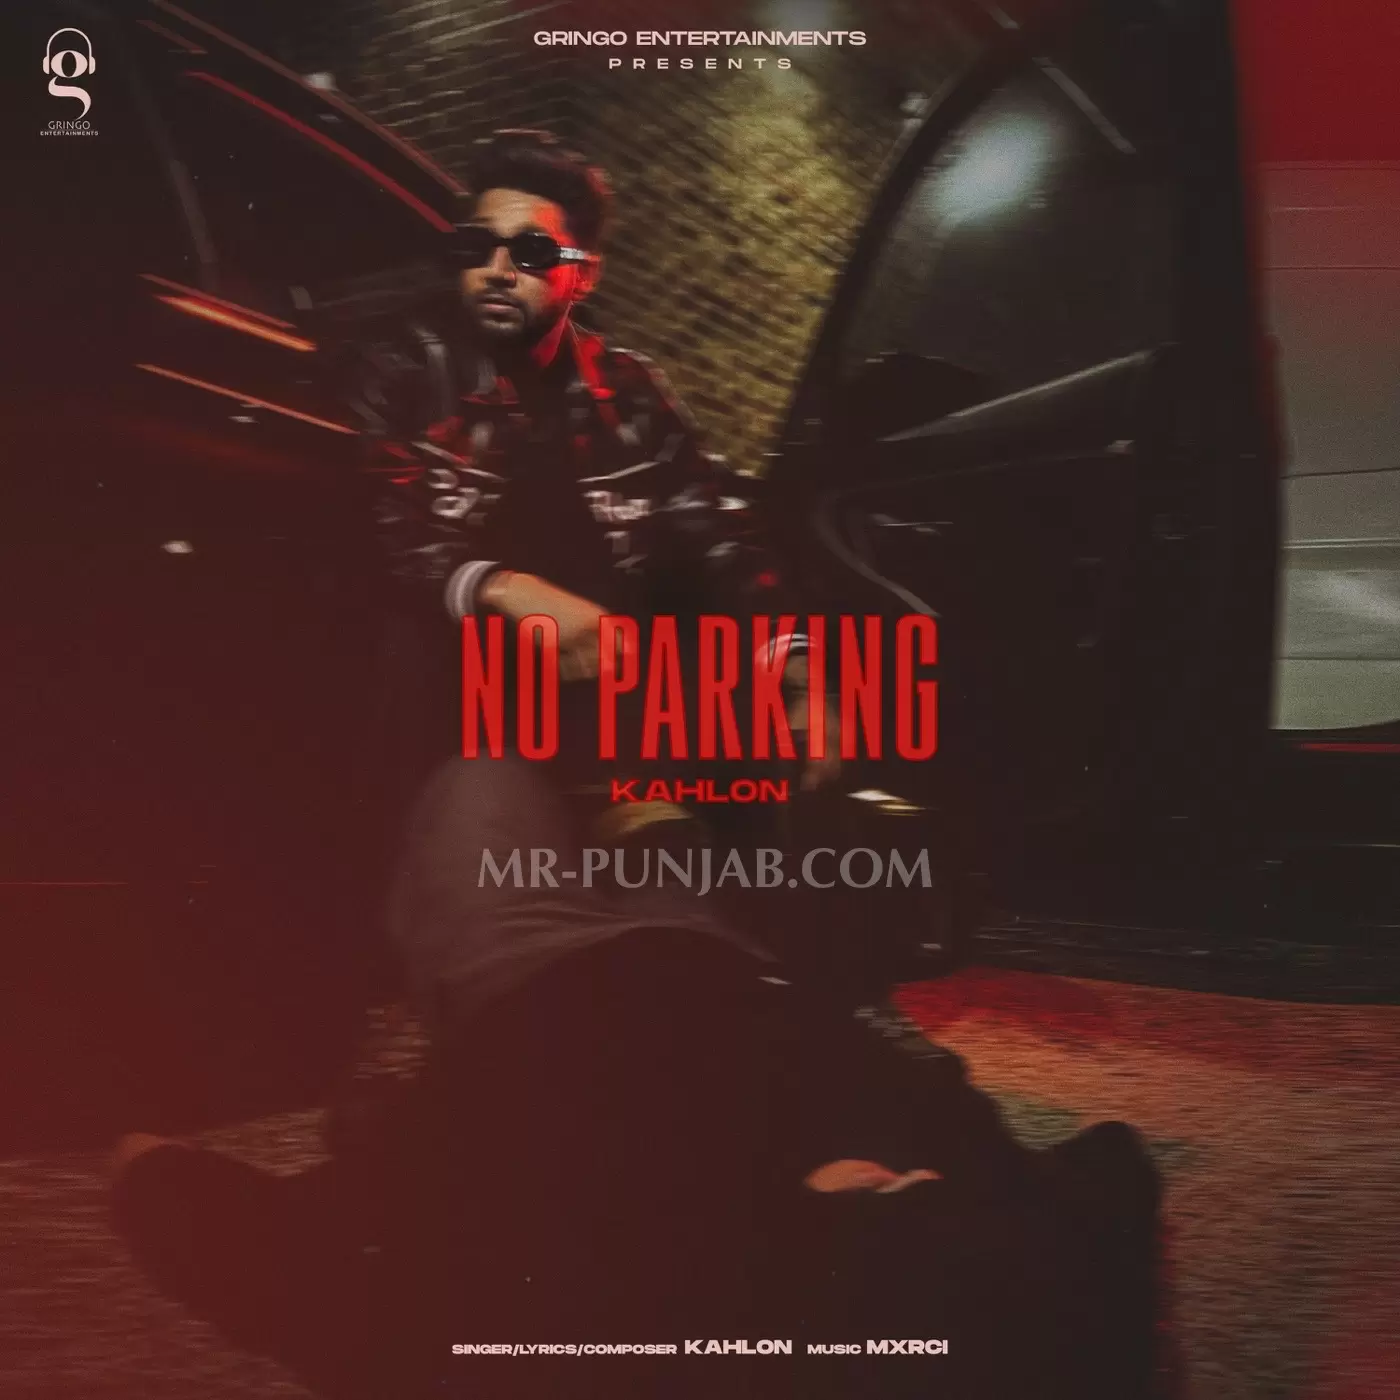 No Parking Kahlon Mp3 Download Song - Mr-Punjab